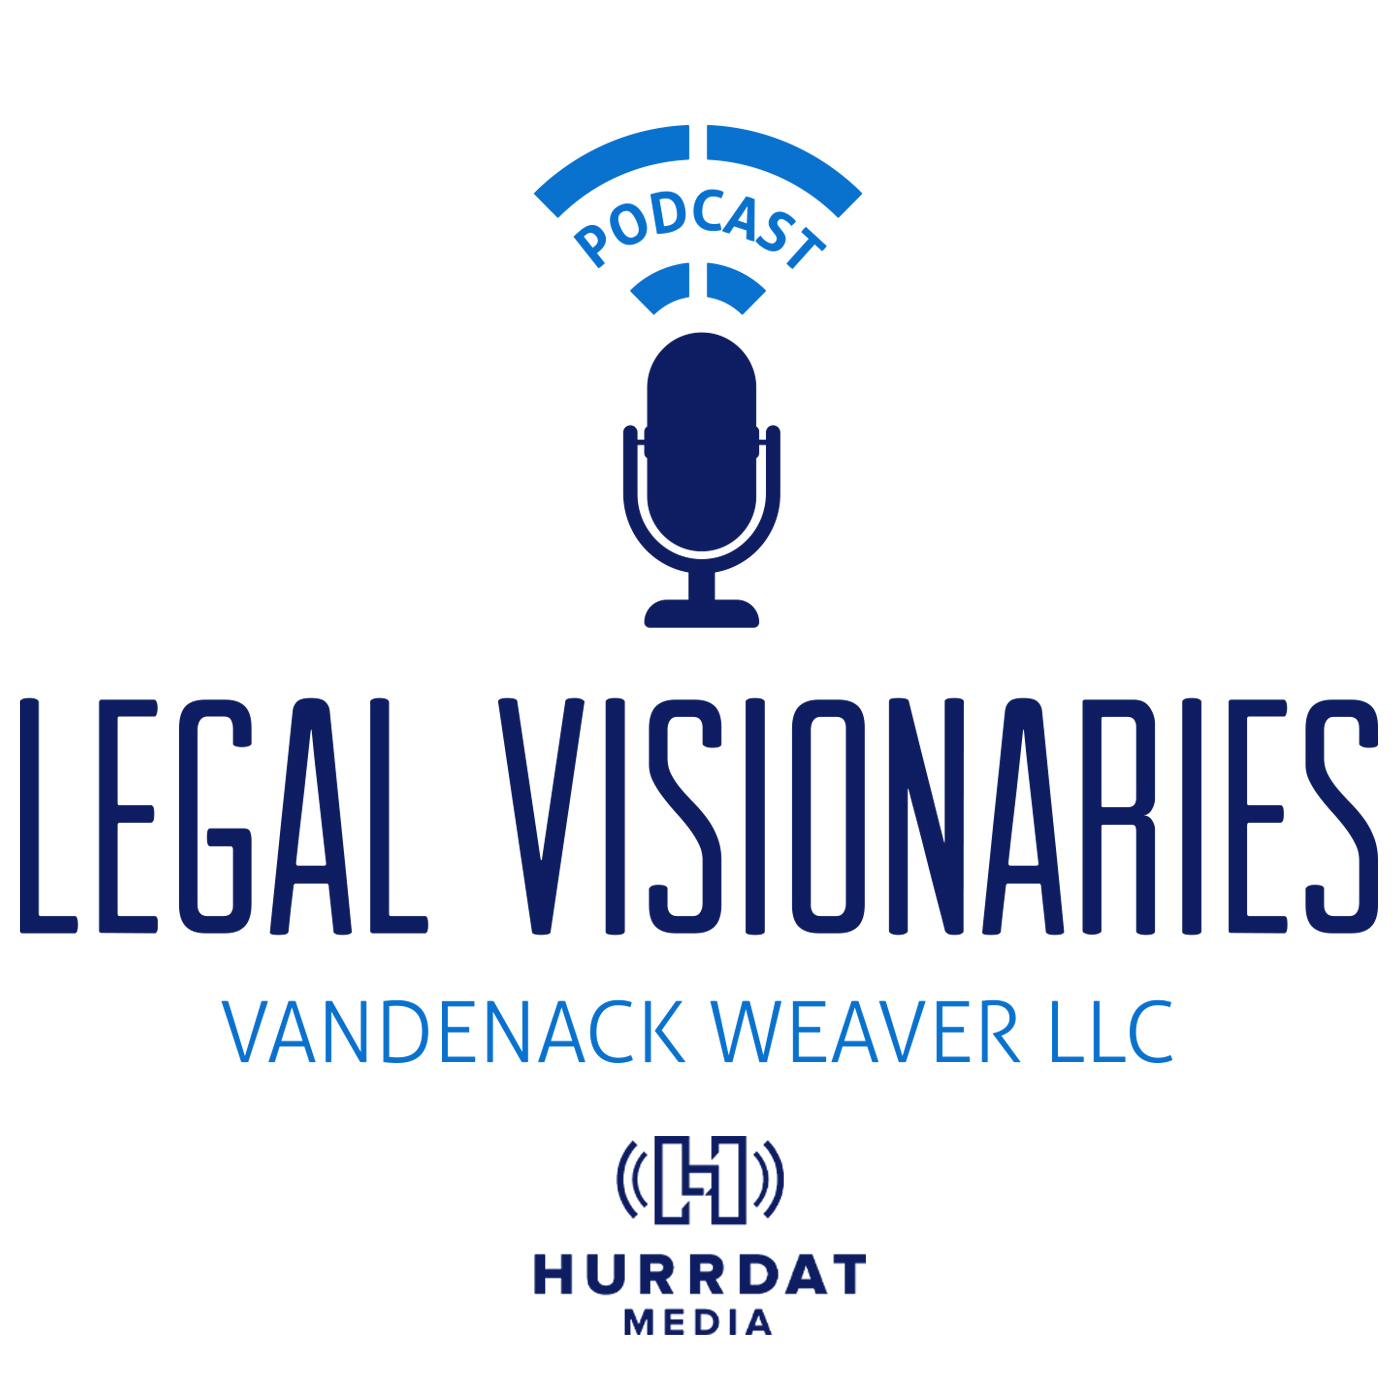 Vandenack Weaver - Legal Visionaries